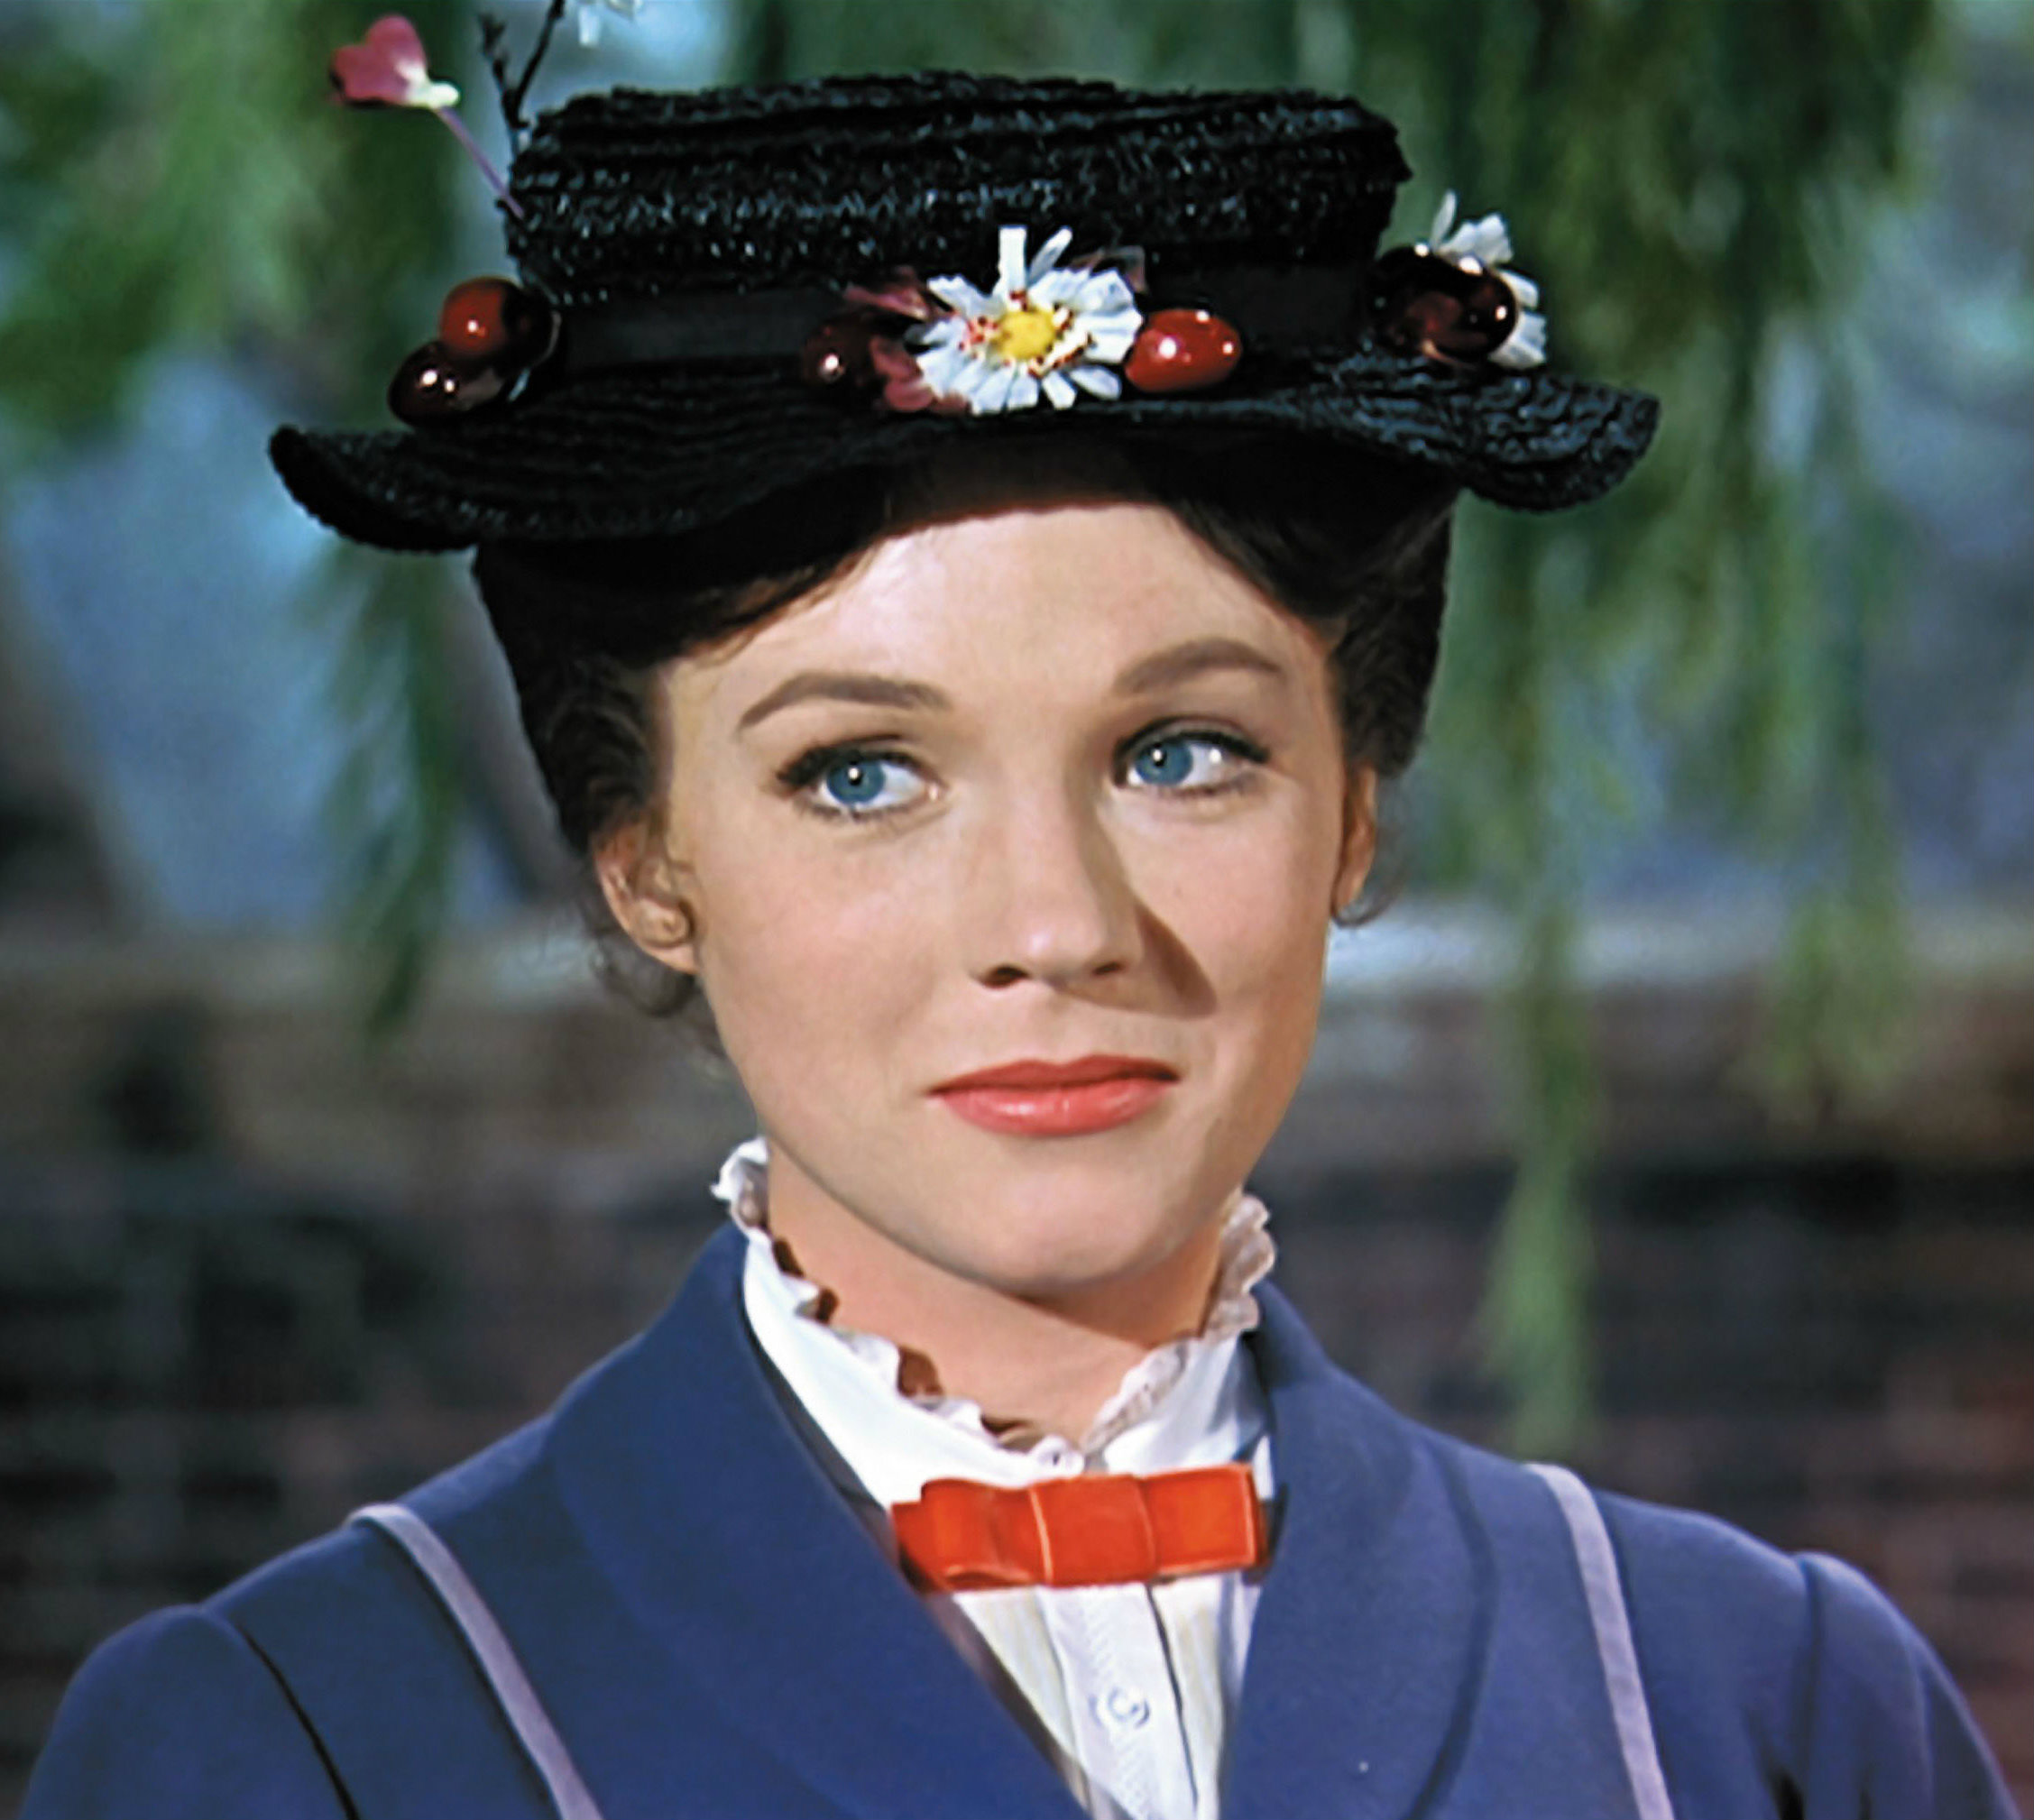 Mary Poppins (Film) - TV Tropes